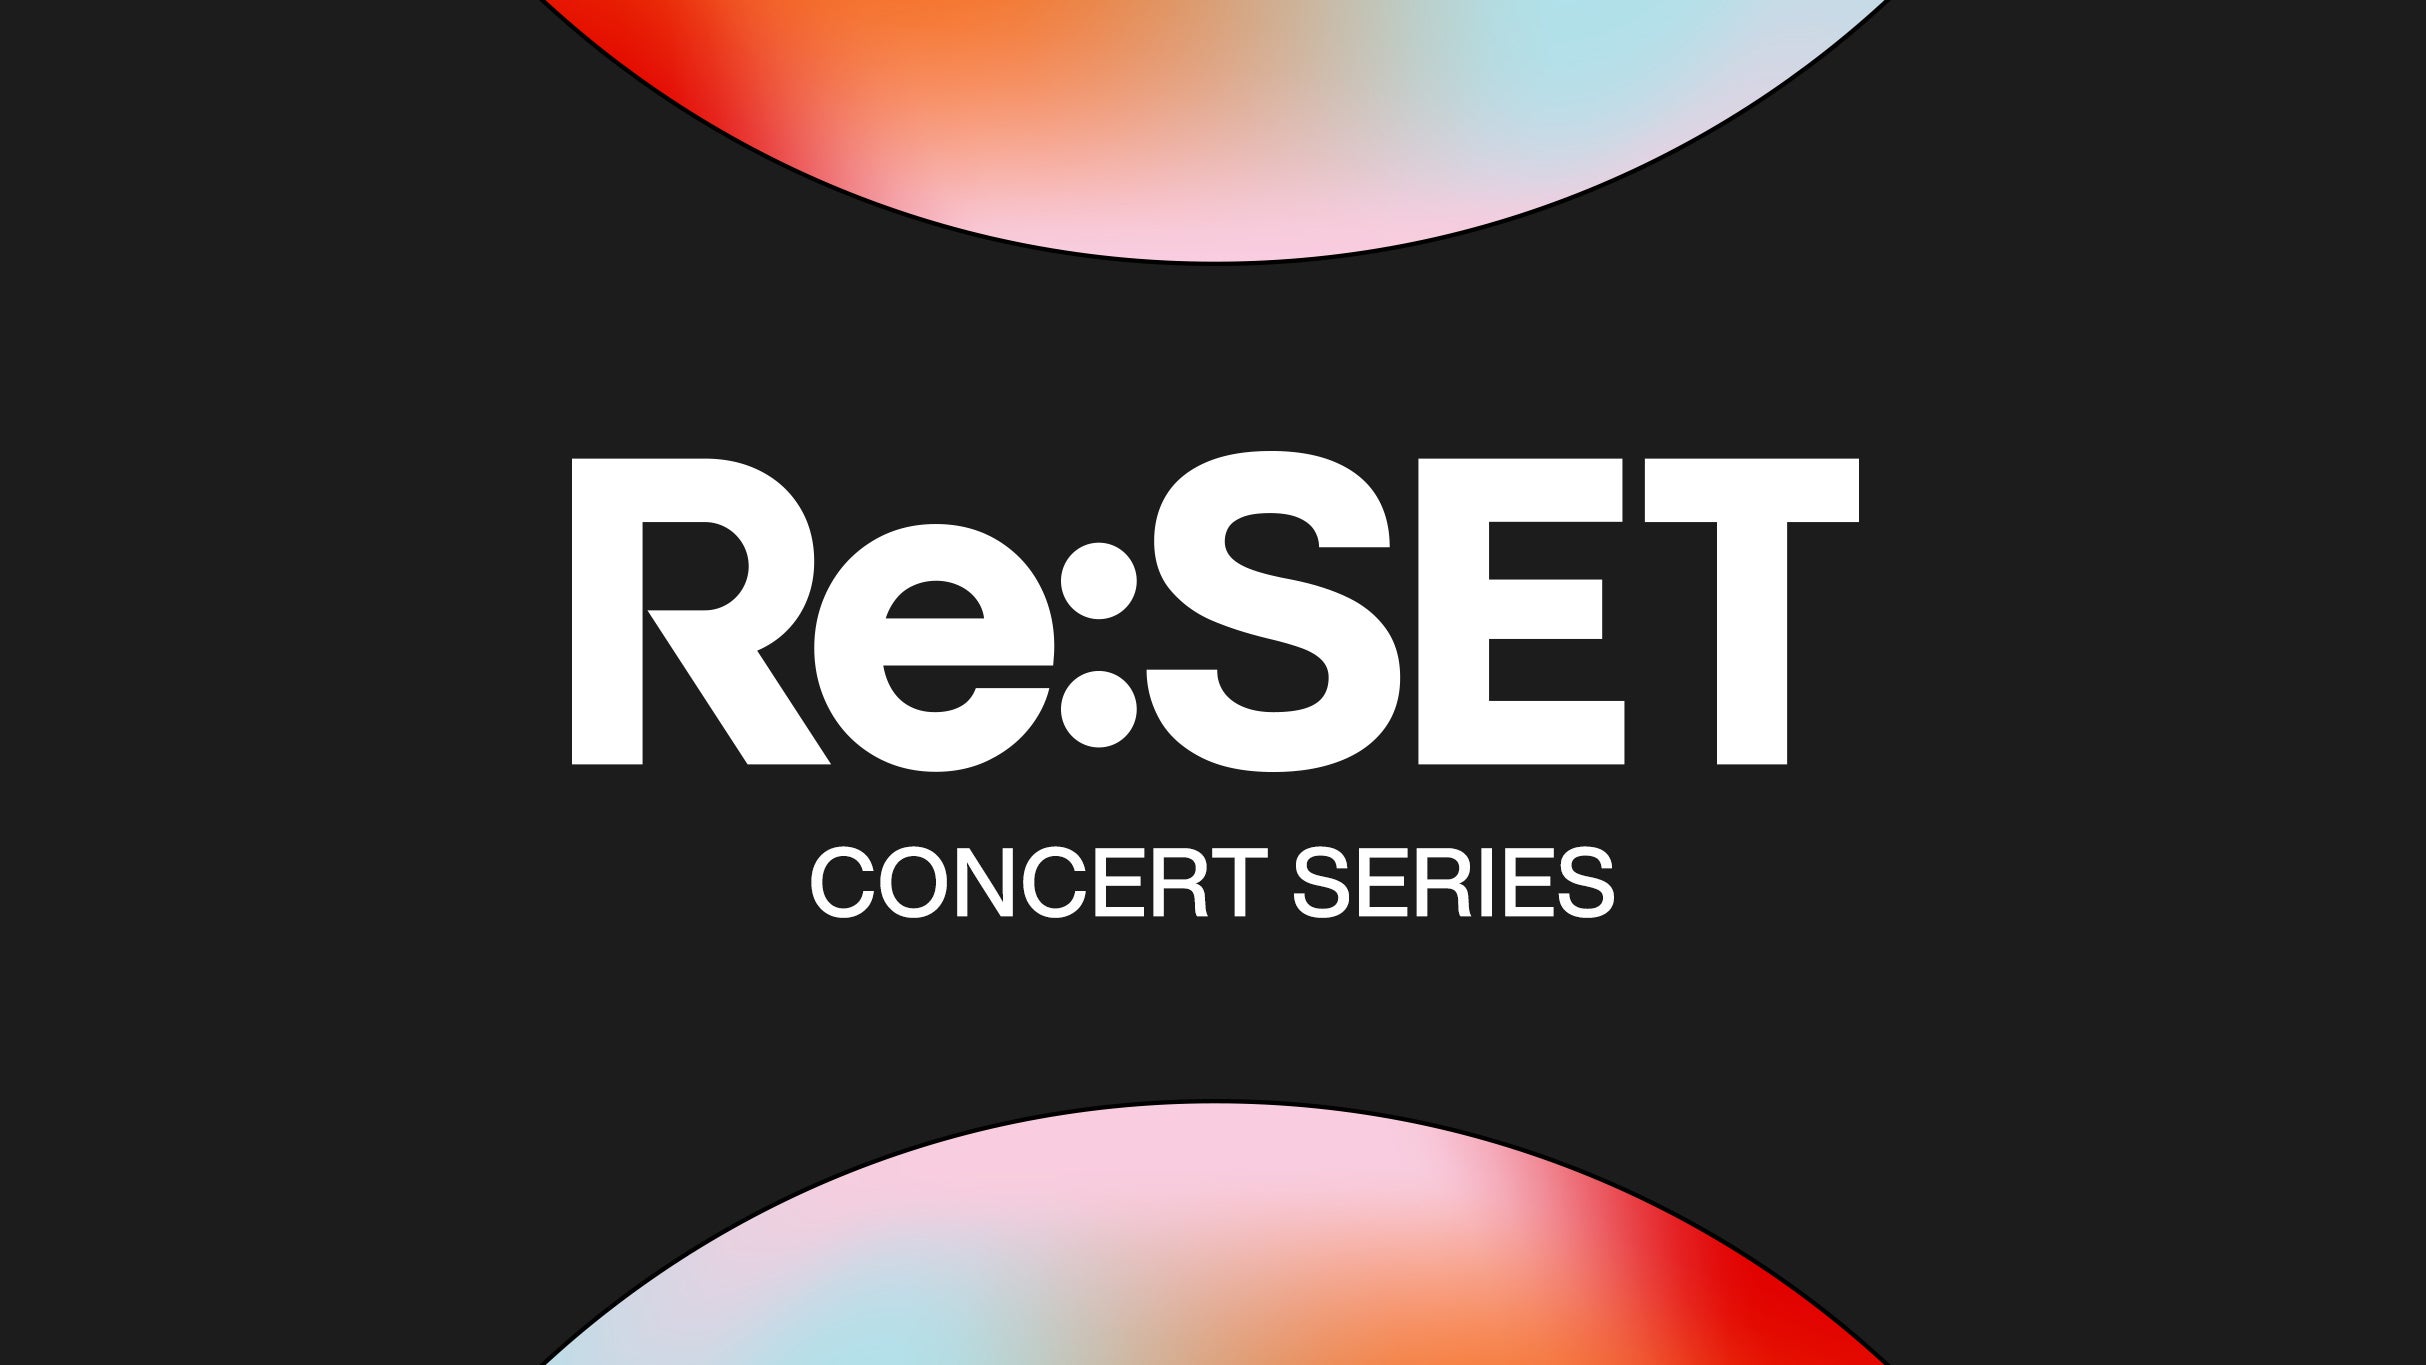 Re:Set Concert Series at Frost Amphitheatre